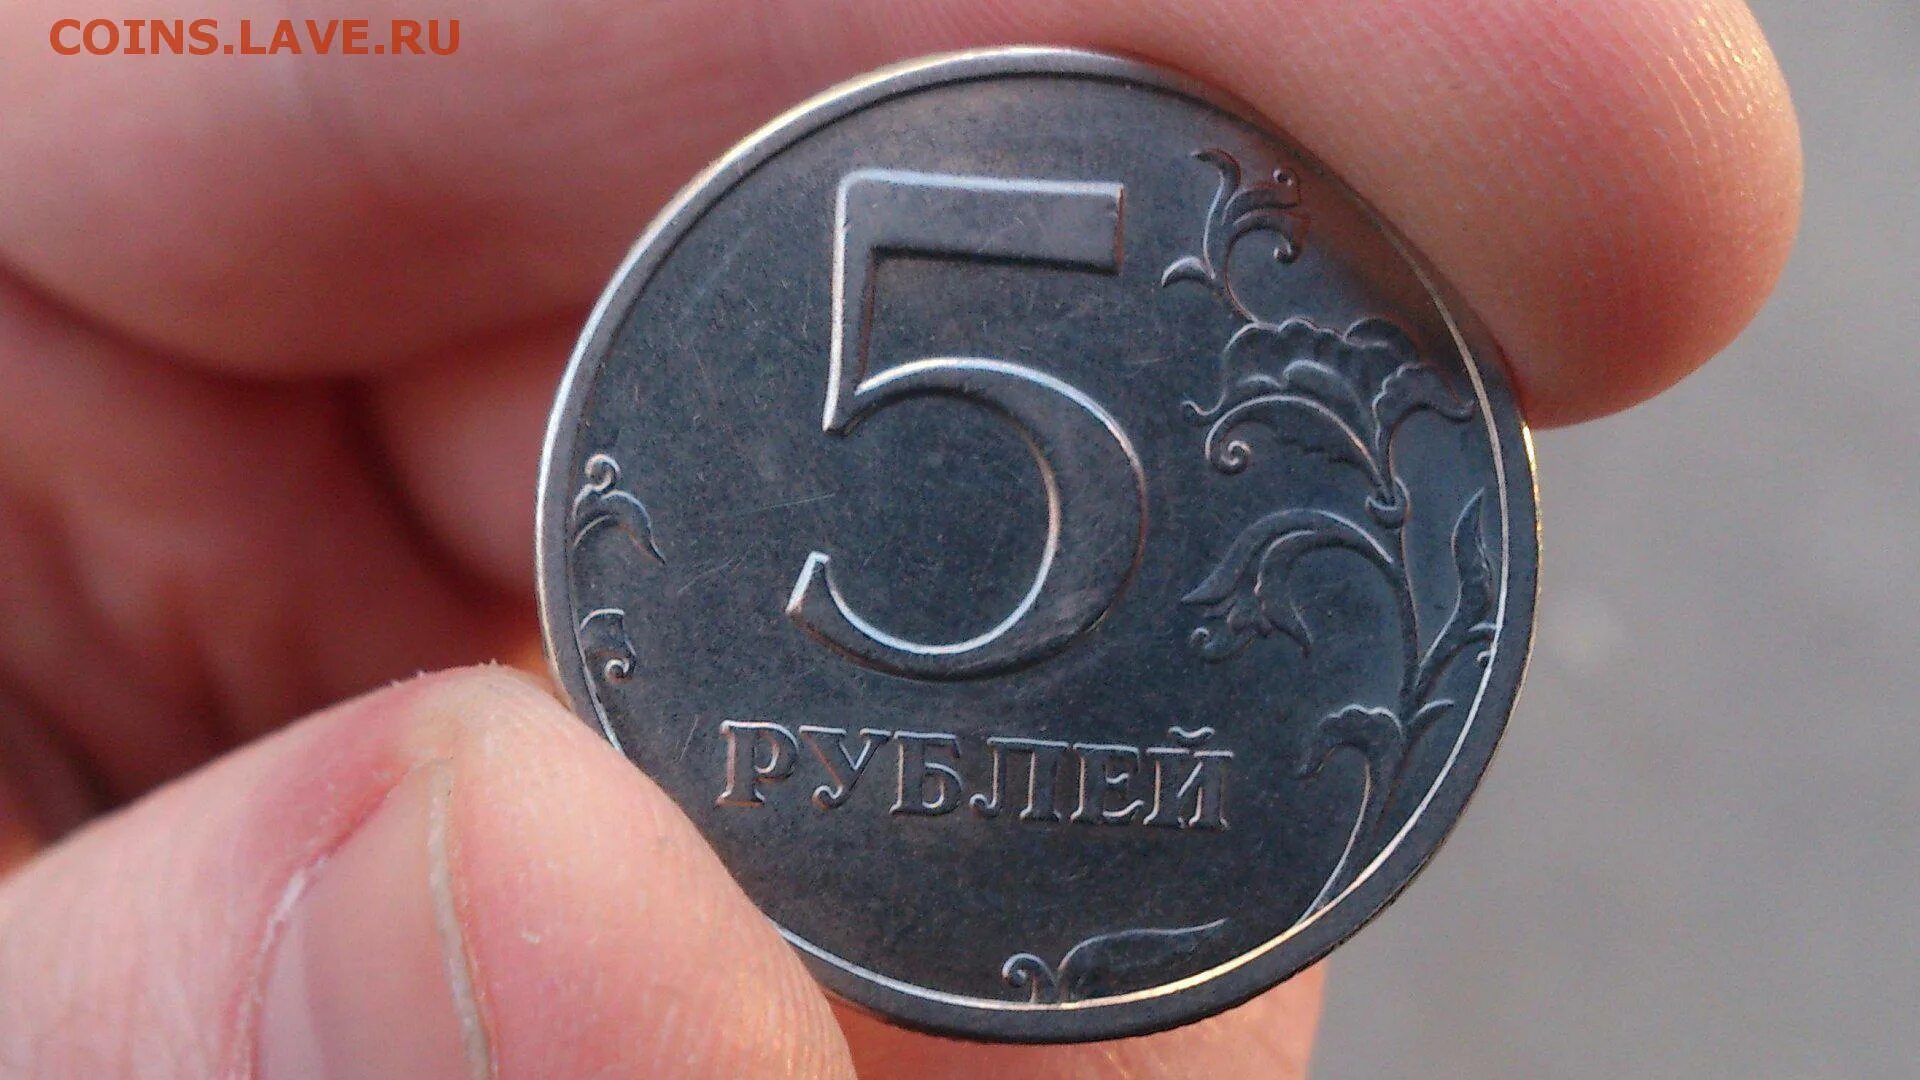 Скидка 5 рублей с литра. Монеты. Монеты рубли. Монета 5 рублей в руке. Монетка 5 рублей.